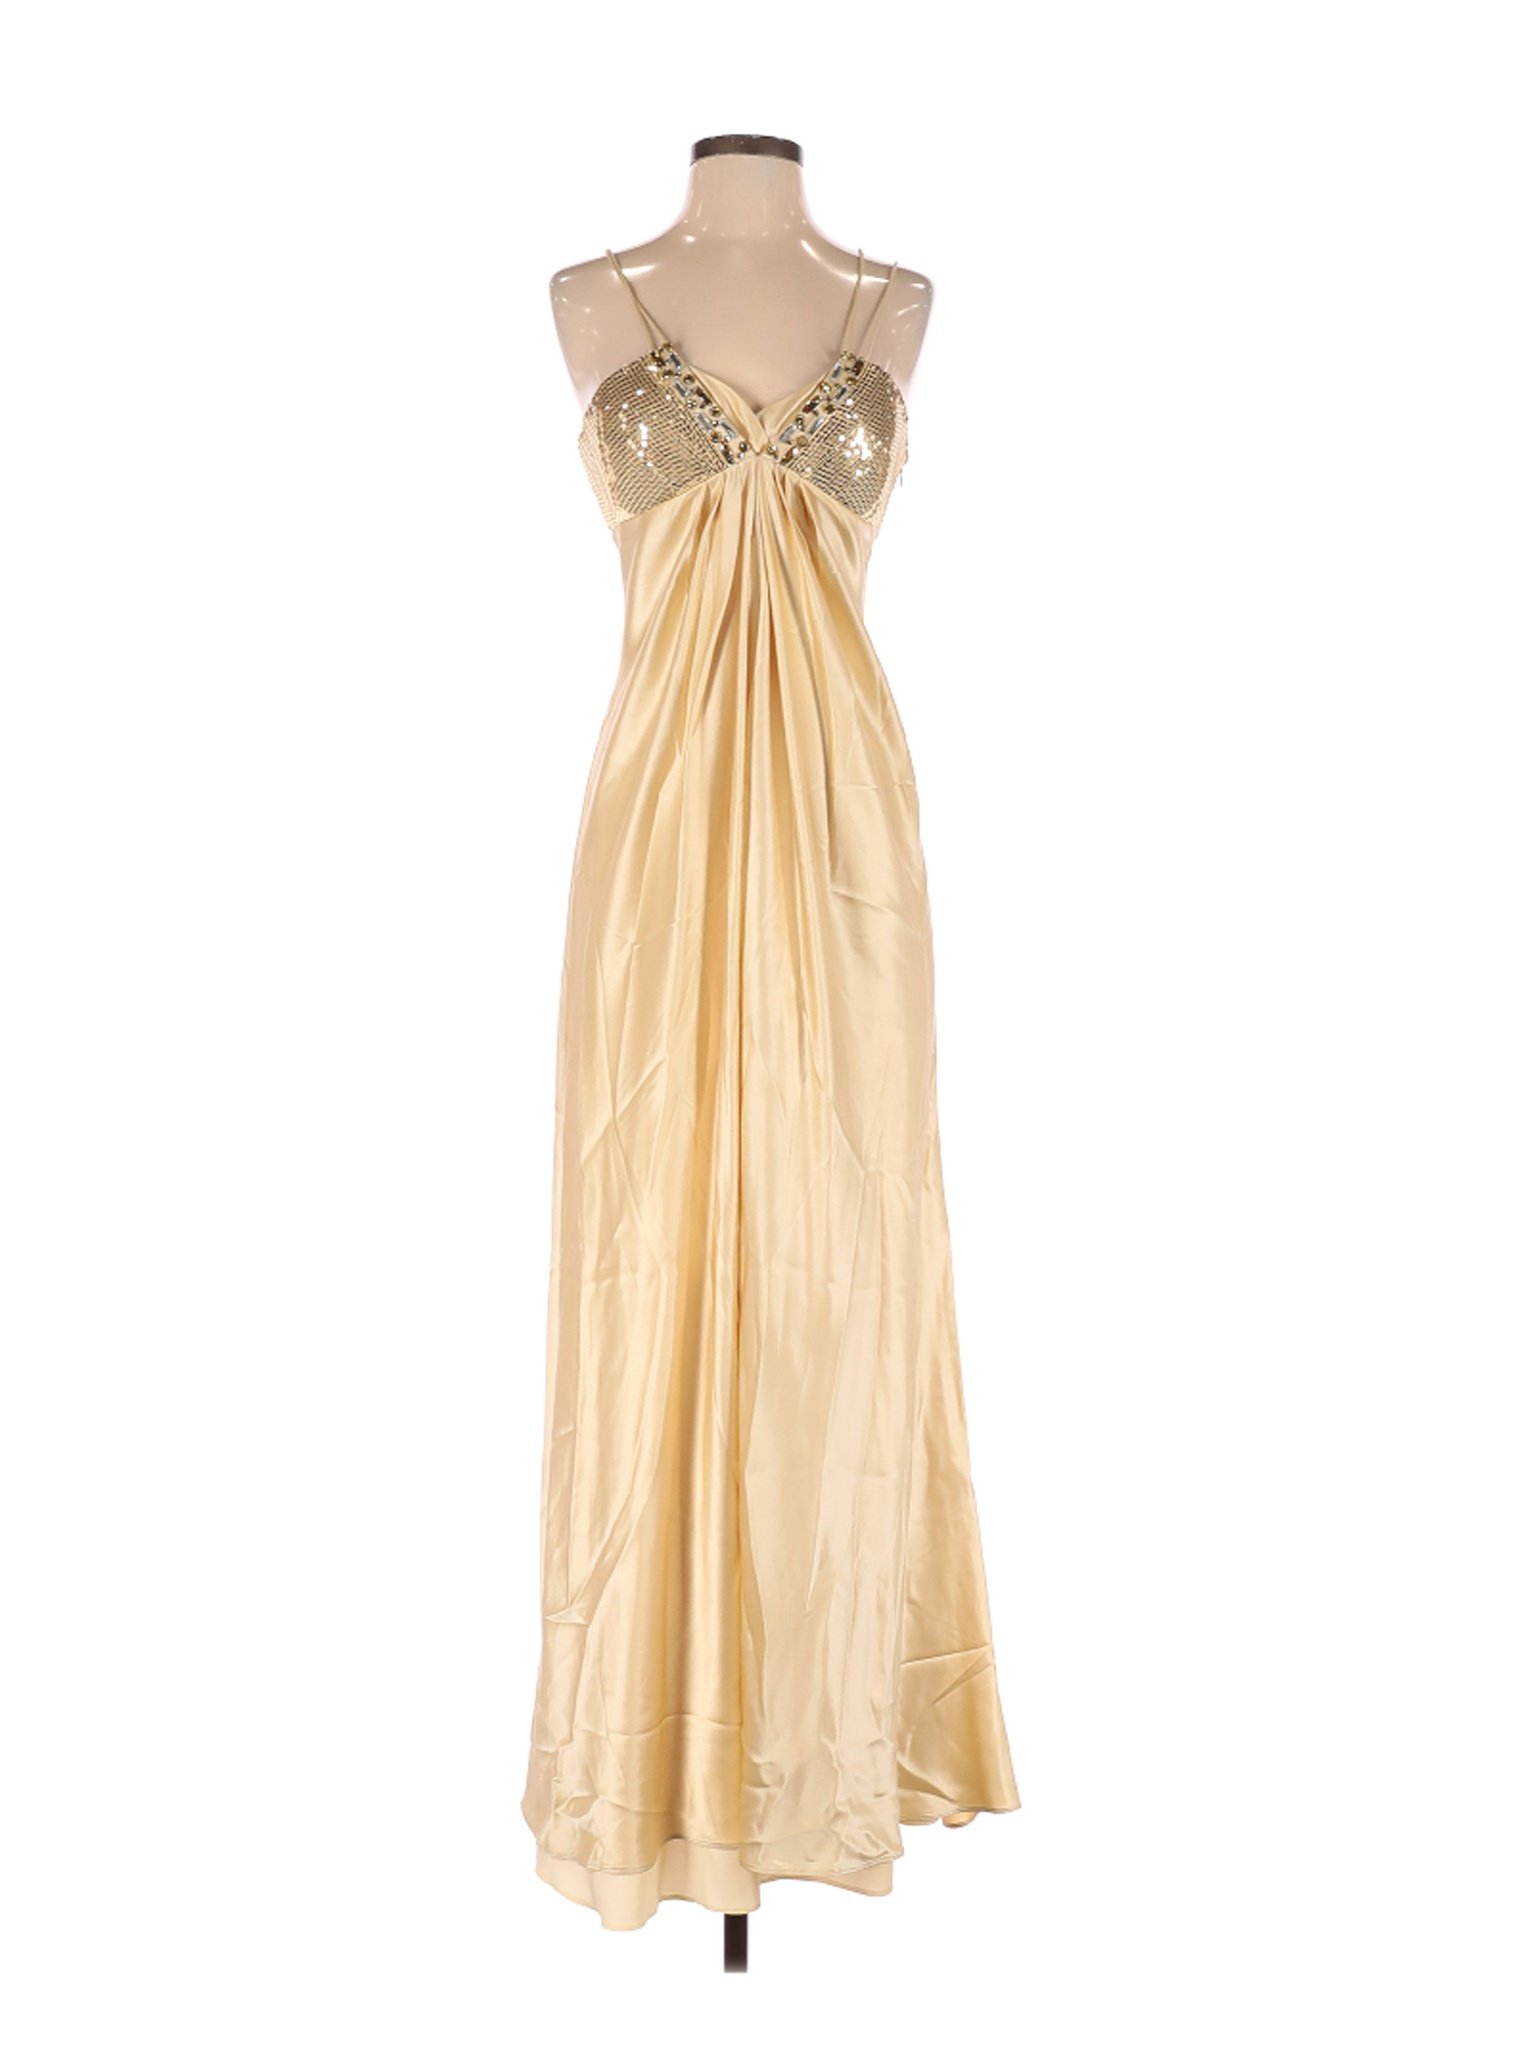 Marc Bouwer Glamit! Women Gold Cocktail Dress 4 | eBay